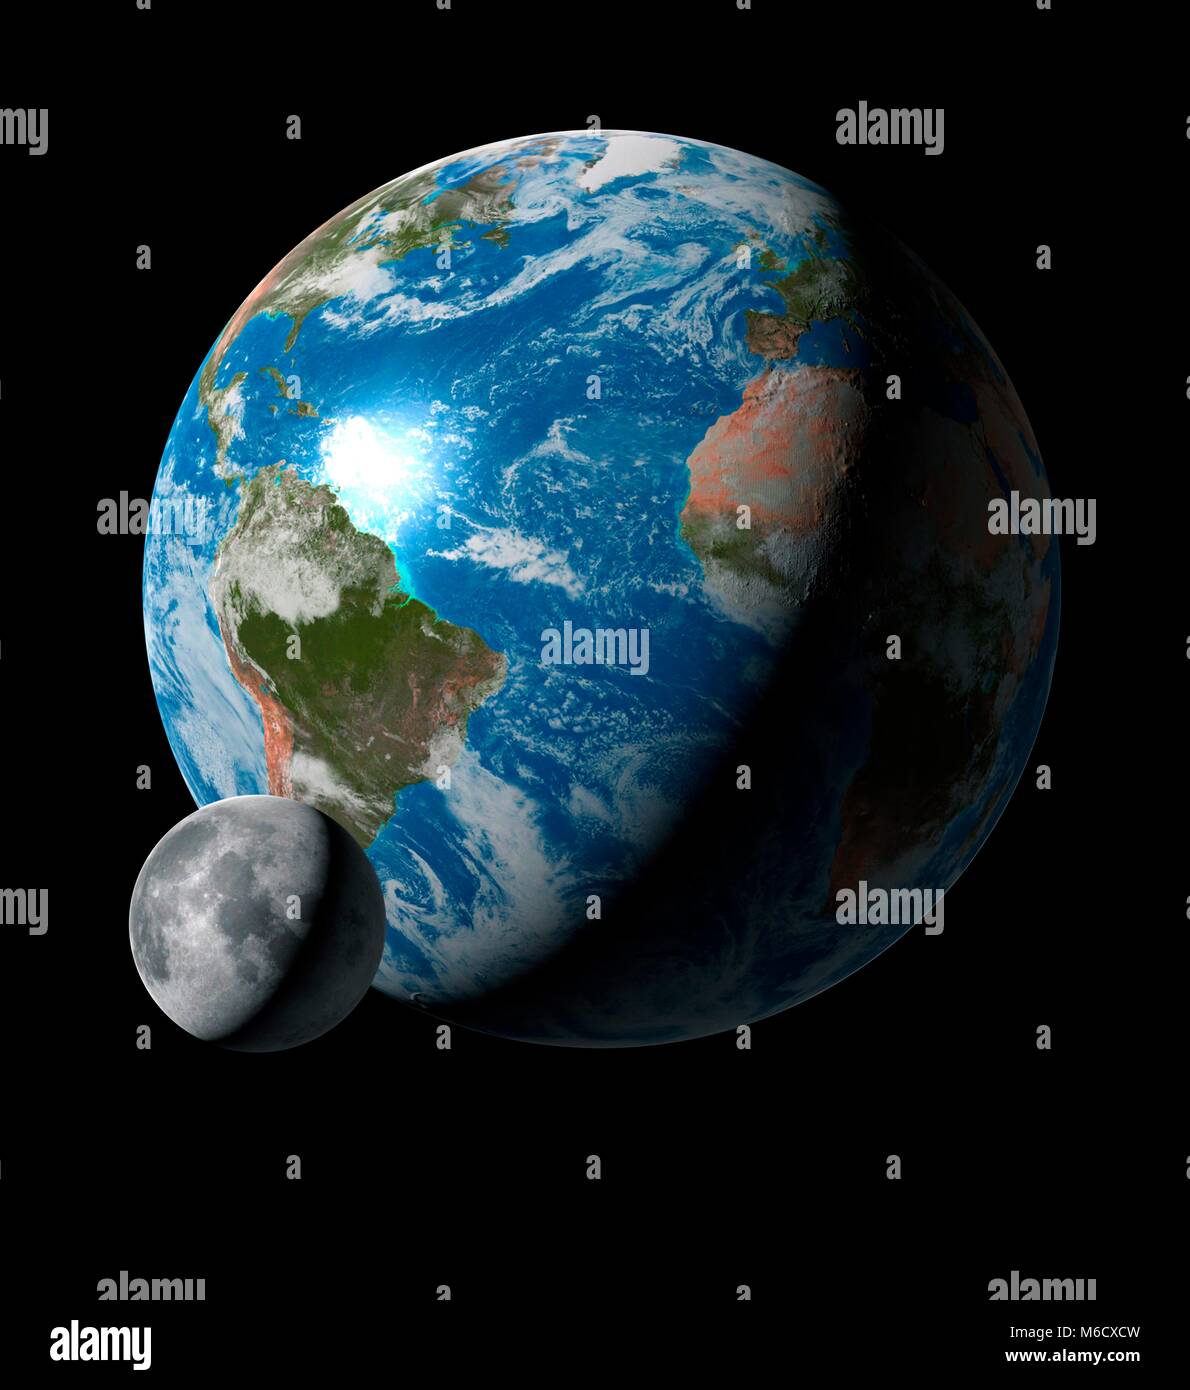 Bild vergleichen von der Größe der Erde mit seiner einzigen Mond. Der Mond ist 27% der Größe ihrer Eltern, die es einmal alle 27,3 Tage umkreist. Trotz seiner diminitive Größe im Vergleich zur Erde, der Mond ist tatsächlich sehr viel größer, im Vergleich zu ts Elternteil, als alle anderen natürlichen Satelliten des Sonnensystems, mit Ausnahme der larget Plutos Mond Charon. Stockfoto